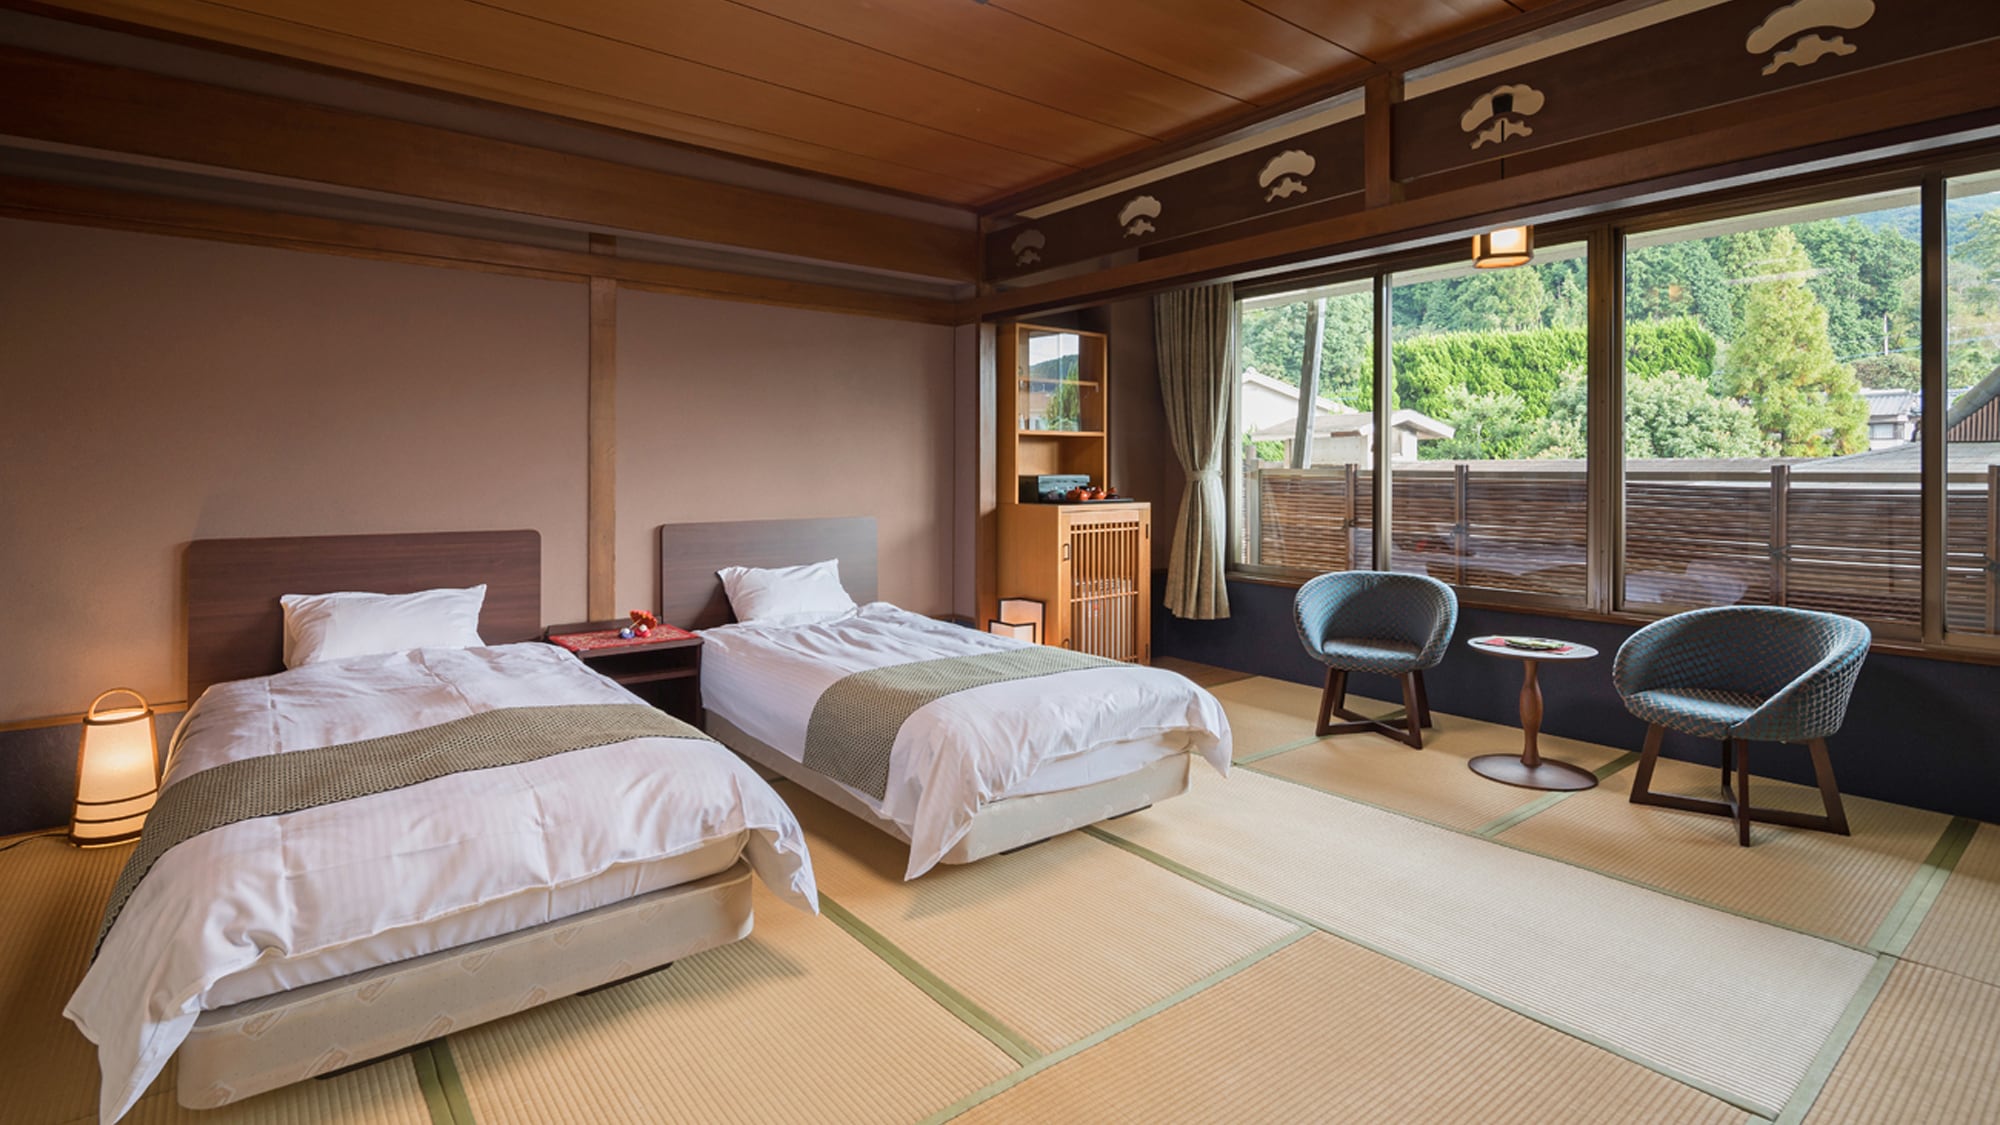 【본관/일본식 모던】일본식 방에 침대 2대 설치한 방입니다.